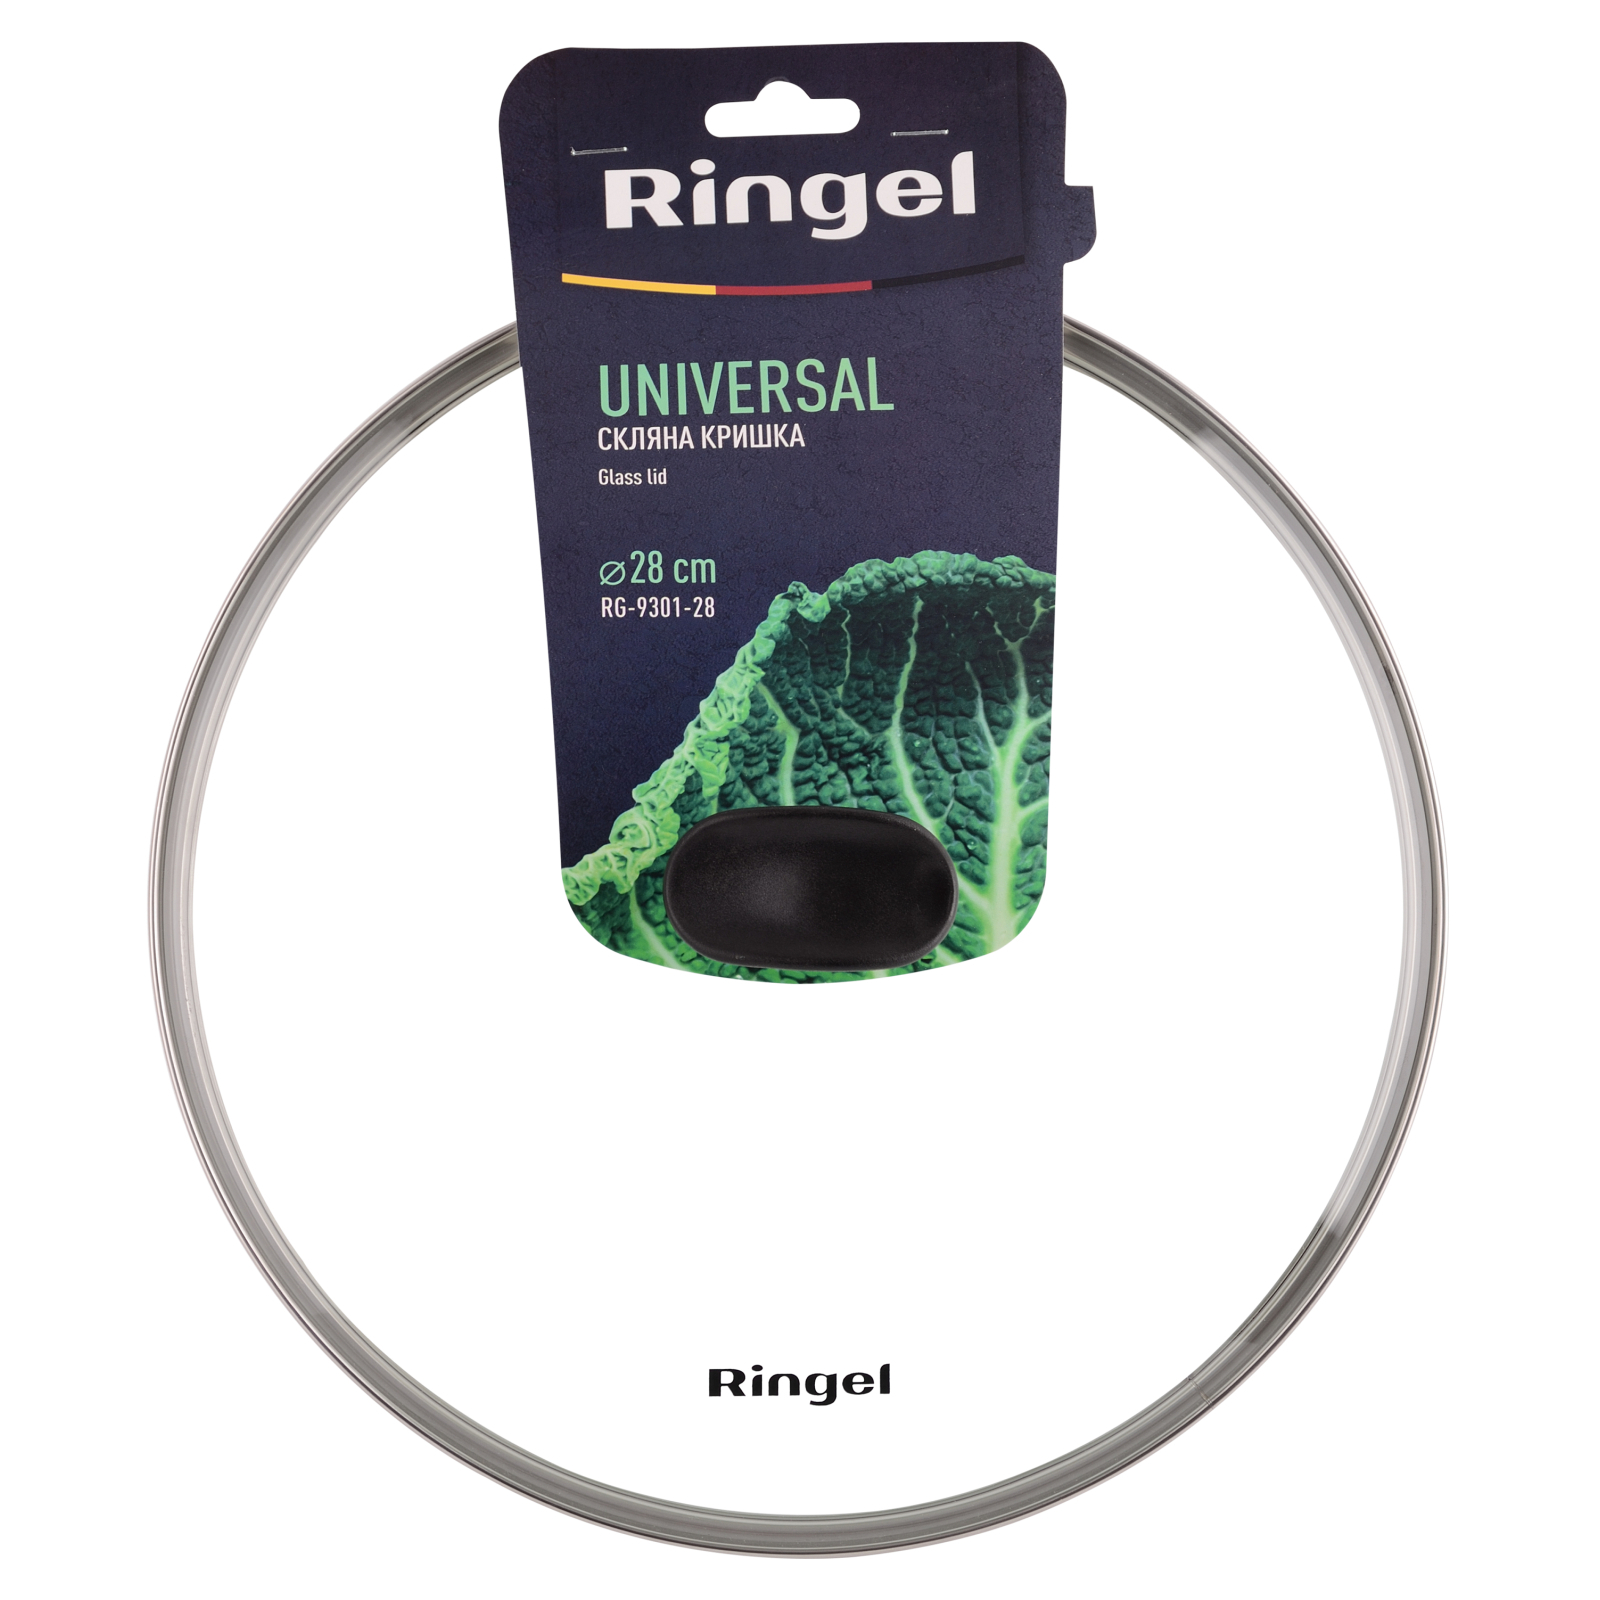 Крышка для посуды Ringel Universal 20 см (RG-9301-20) изображение 4